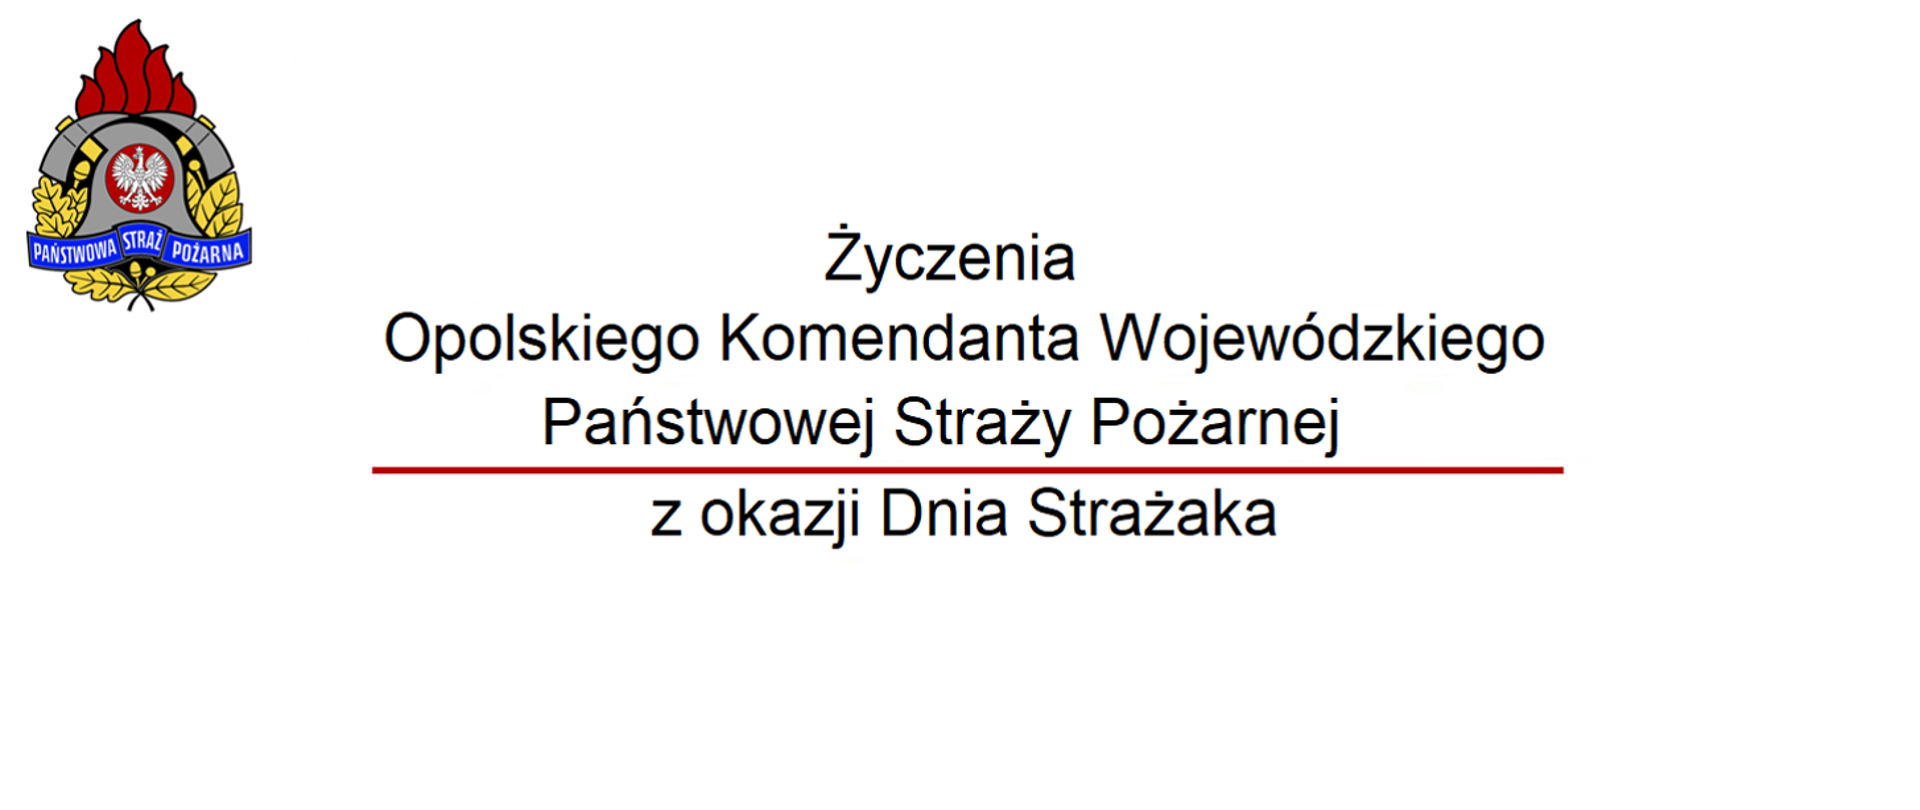 Na zdjęciu znajduje się logo PSP oraz tekst Życzenia Opolskiego Komendanta Wojewódzkiego PSP z okazji Dnia Strażaka